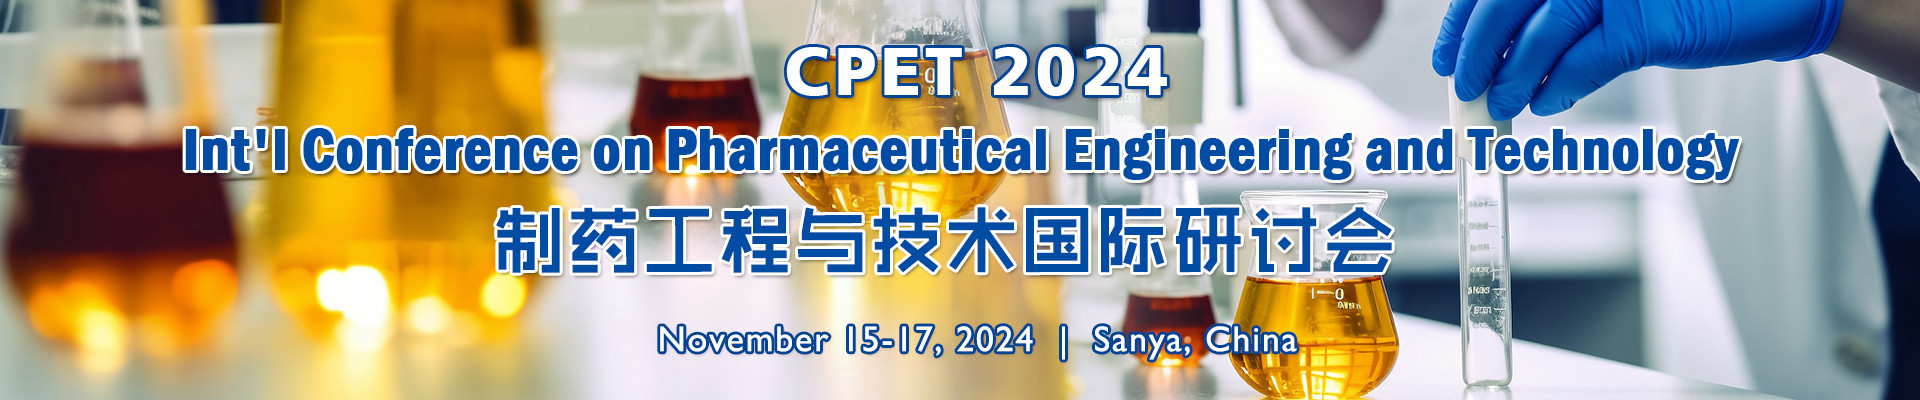 2024年制药工程与技术国际研讨会(CPET 2024) 